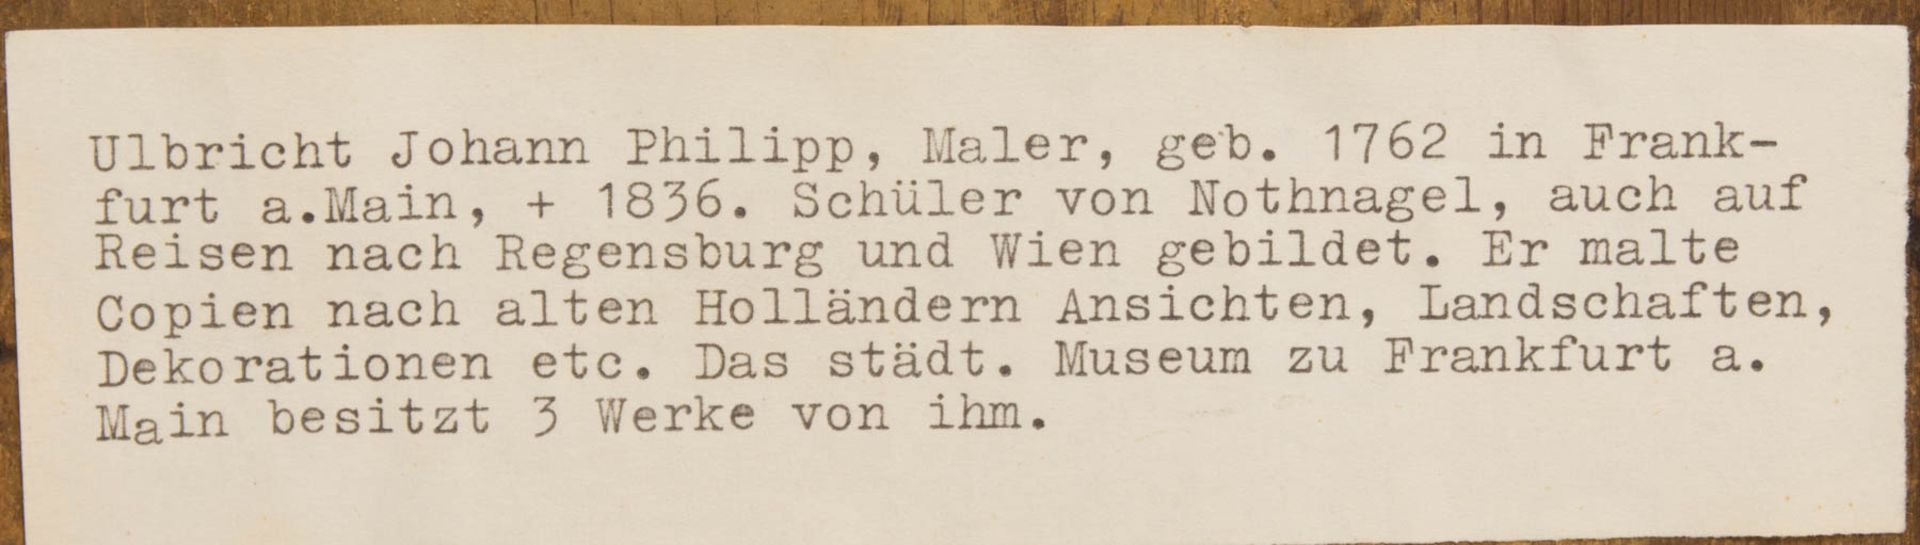 Ulbricht Johann Phillipp, Paar Humorvolle Szenen, Öl auf Holz, Mitte 18. Jh. - Bild 4 aus 12